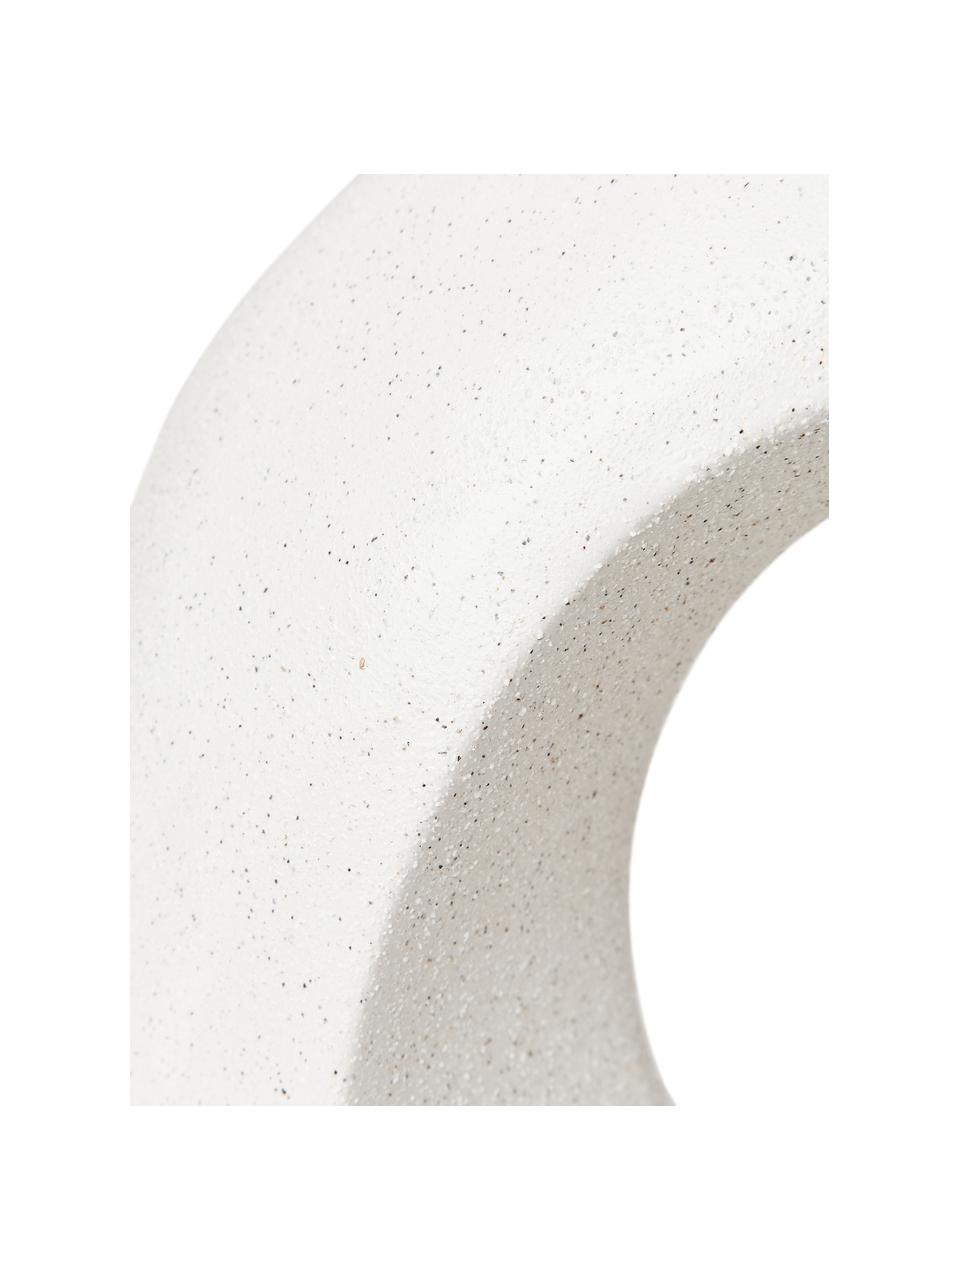 Dekorace s pískovým vzhledem Olena, Keramika, Bílá, Š 32 cm, V 31 cm